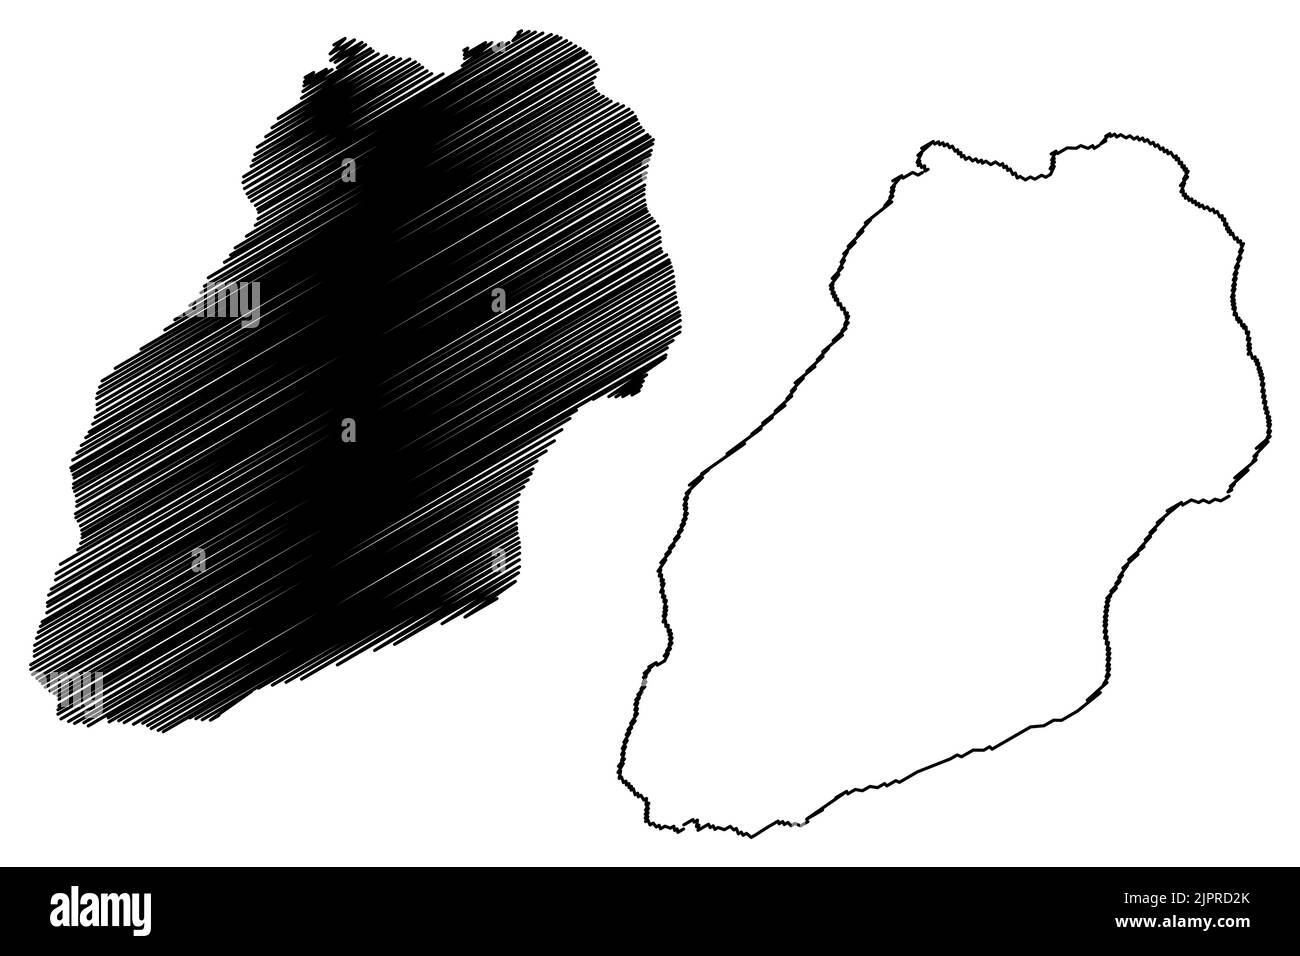 Île d'Inishmaan (République d'Irlande, îles d'Aran, baie de Galway) carte illustration vectorielle, croquis griffés carte de l'île d'Inis Meain Illustration de Vecteur